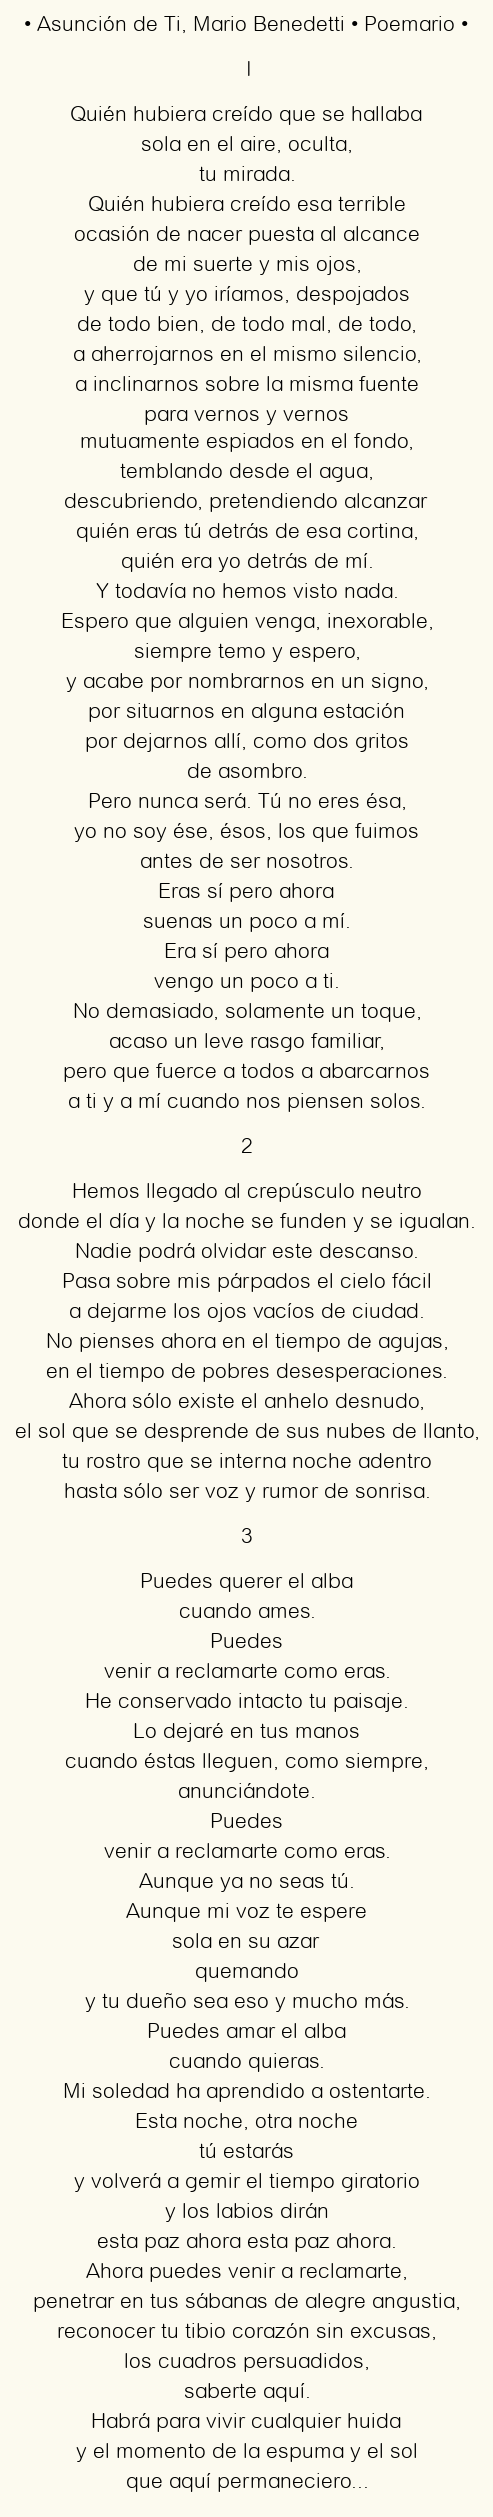 Imagen con el poema Asunción de Ti, por Mario Benedetti